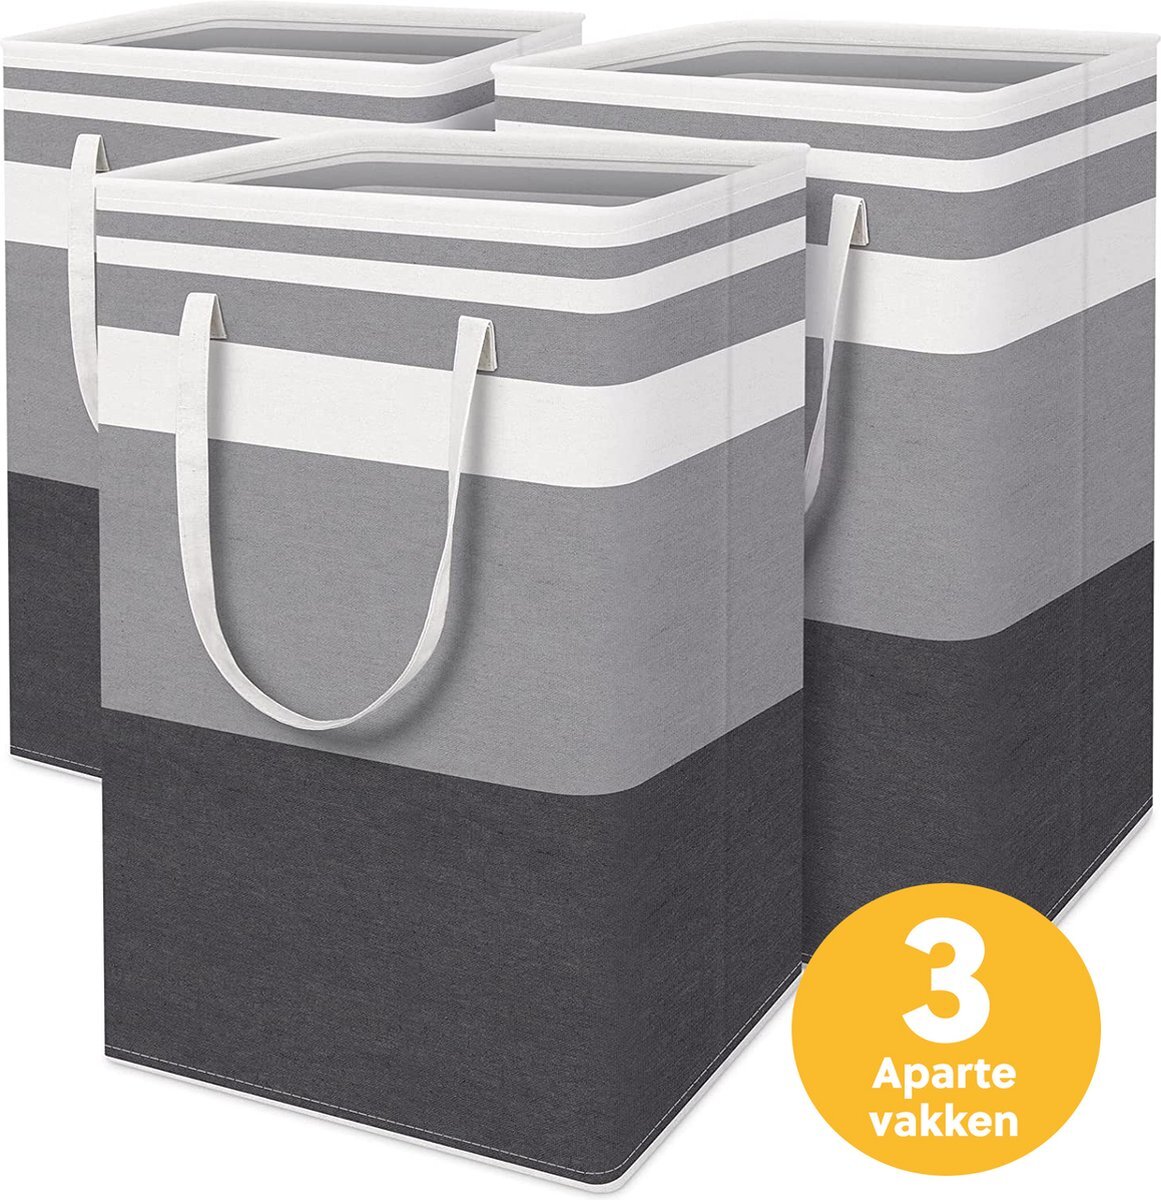 Vicon Wasmand met 3 aparte vakken - 3 x 75L inhoud - Opvouwbaar - Waszakken voor wasgoed - Wassorteerder - Organizer kleding - Wasbox